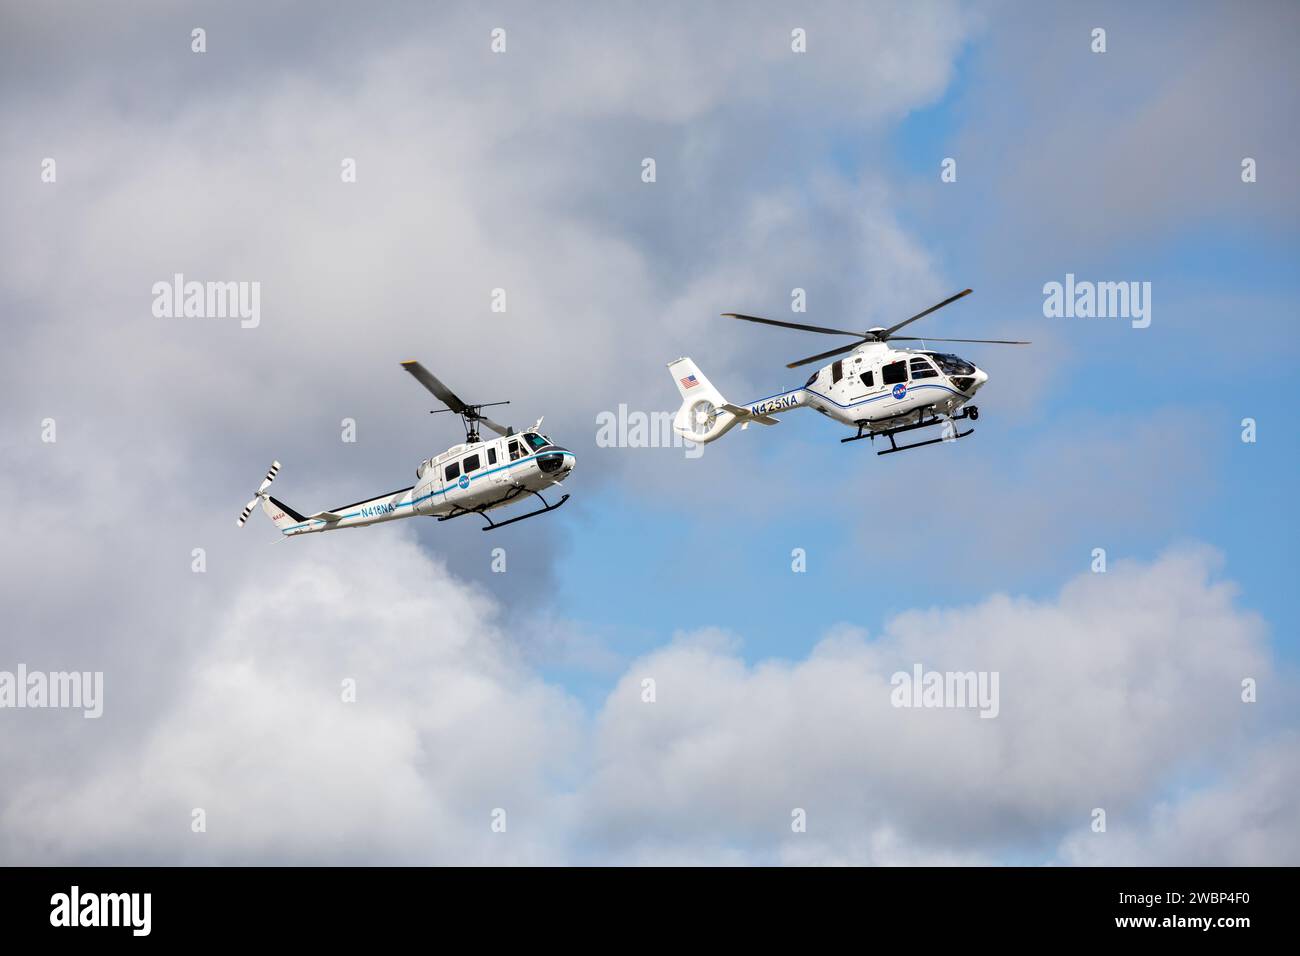 Les hélicoptères Bell Huey 2 (à gauche) et Airbus H135 utilisés pour les opérations de sécurité au Kennedy Space Center de la NASA en Floride effectuent un vol ensemble le 27 octobre 2020, avant que les Huey ne soient retirés de leur service. Les Airbus H135 remplacent les trois Bell Huey 2 entretenus par l’équipe des opérations aériennes de Kennedy. Kennedy a reçu deux des H135 le 30 septembre, et le troisième devrait arriver au printemps 2021. Ces nouveaux hélicoptères offrent un certain nombre d'avantages technologiques et de sécurité par rapport aux Hueys, tels qu'une plus grande puissance de levage, une plus grande stabilité dans les airs et une m plus grande capacité de levage Banque D'Images